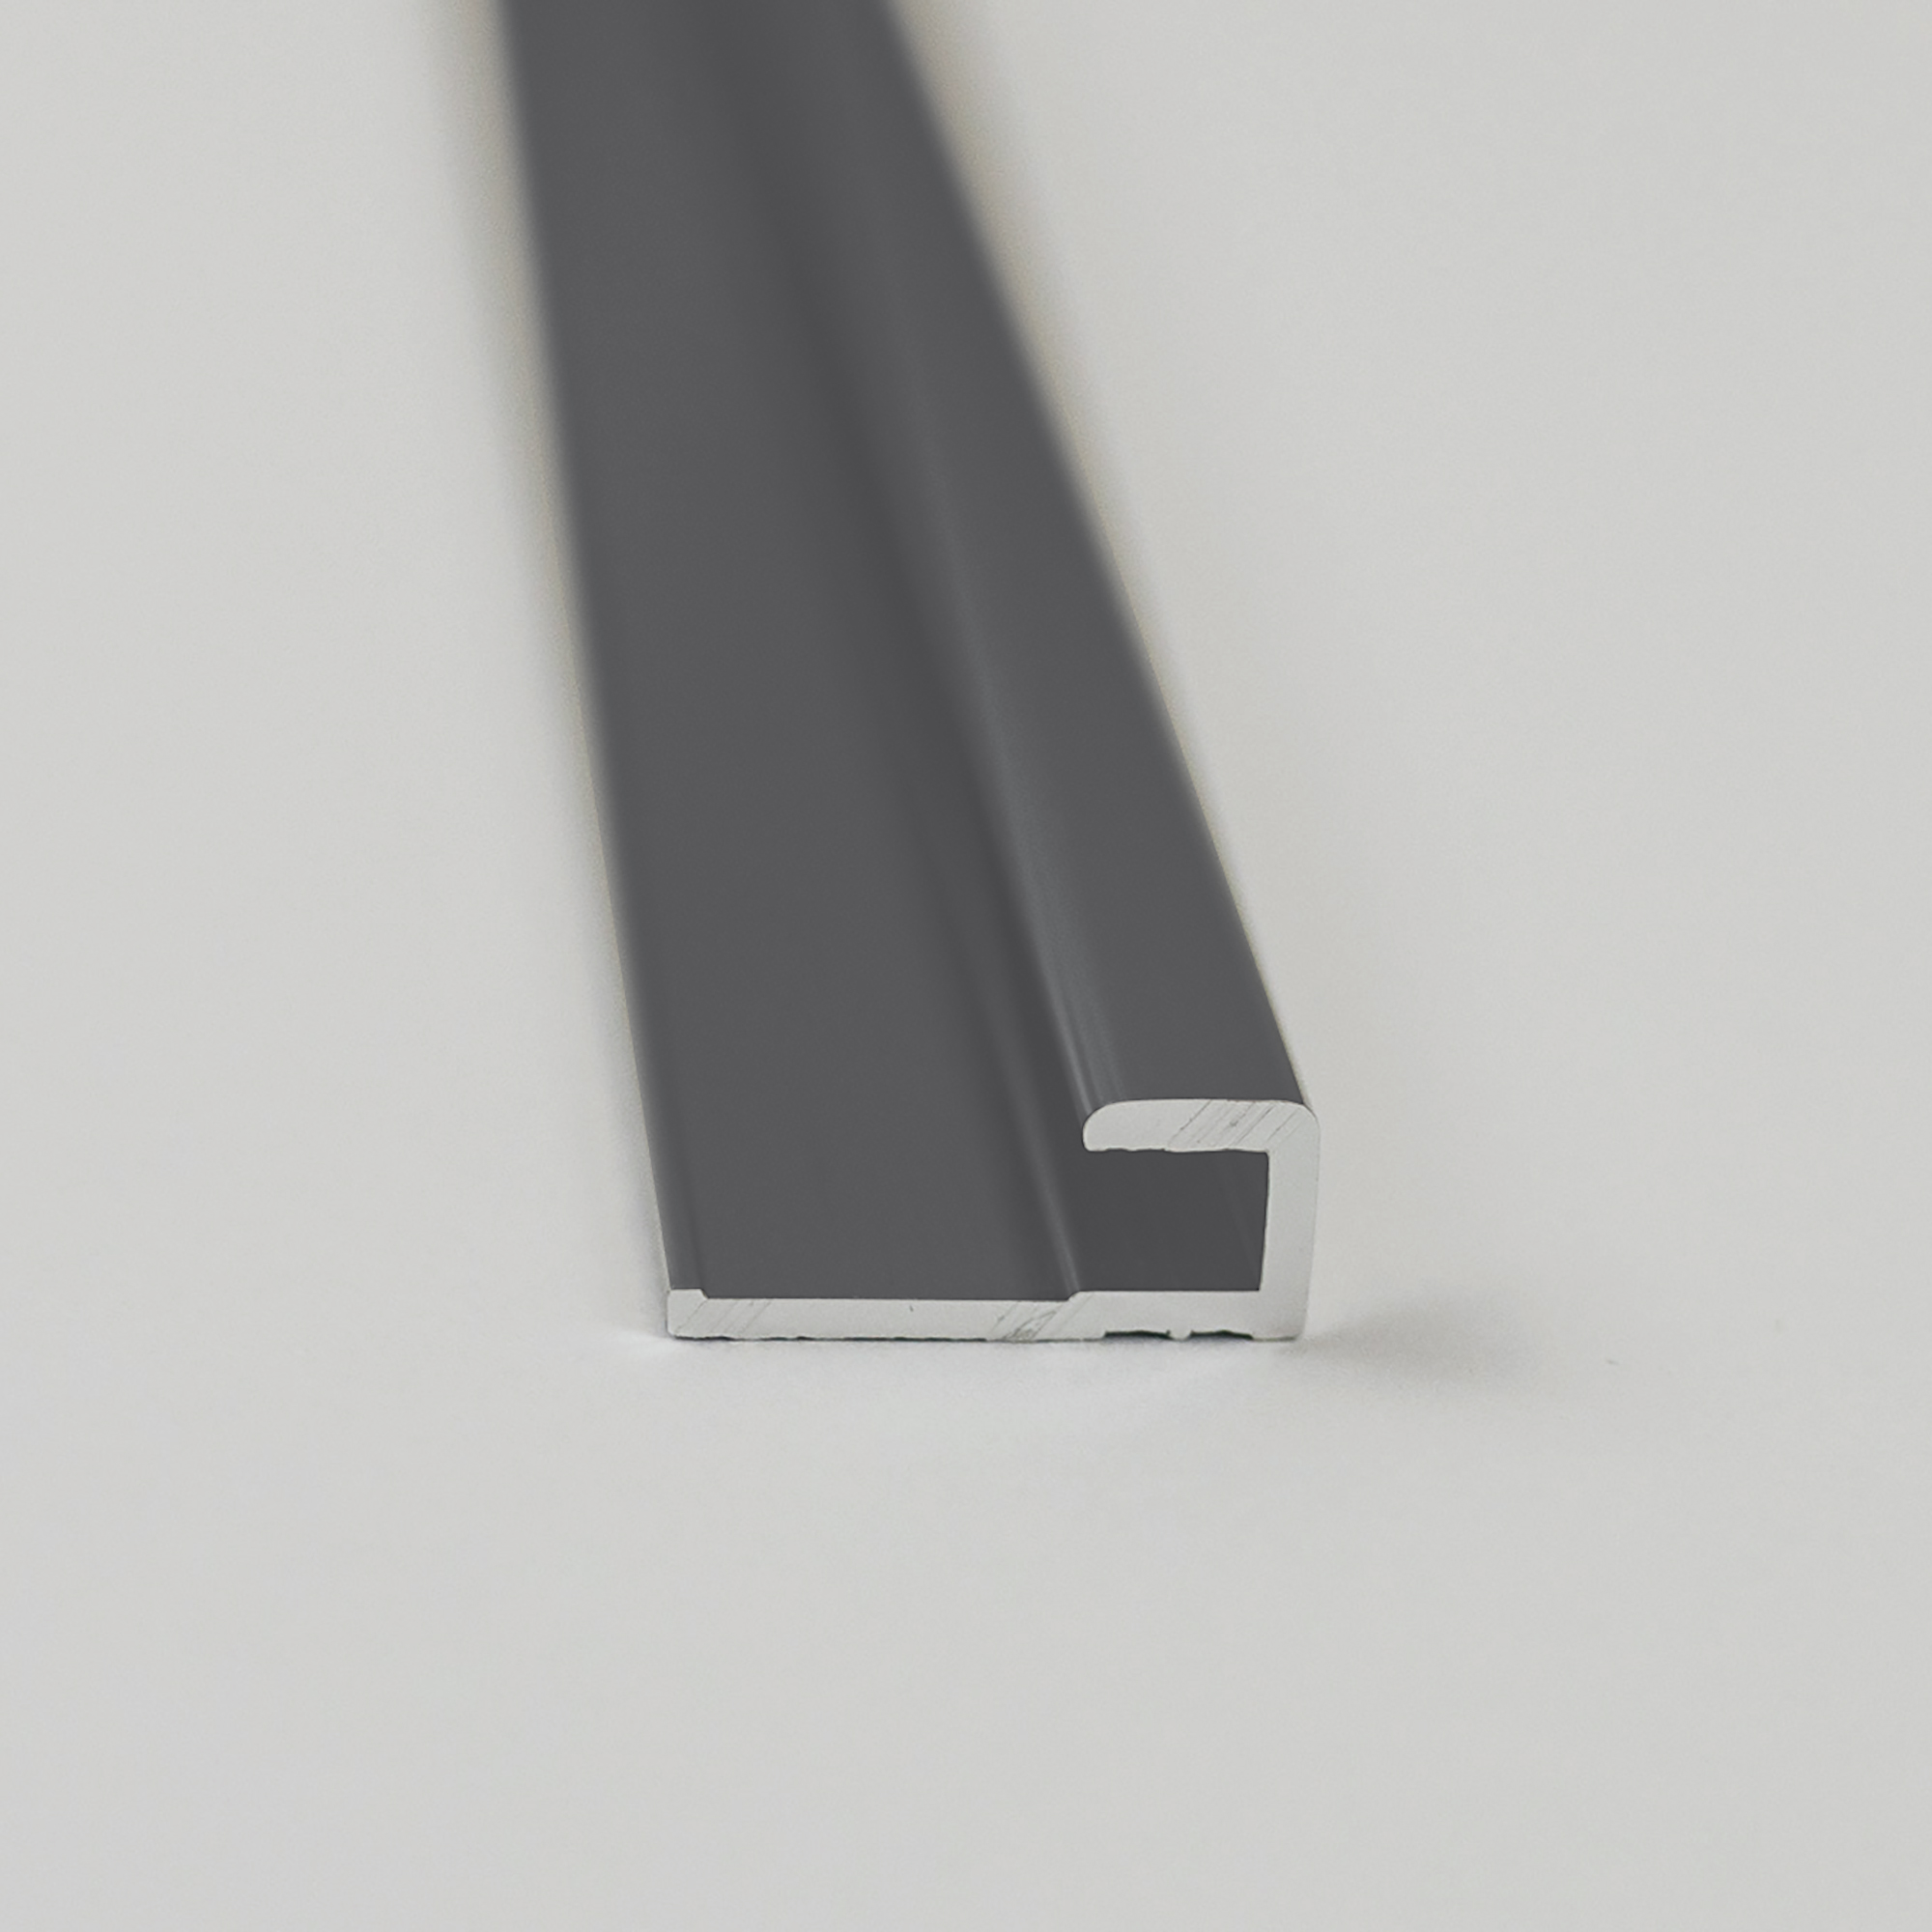 Abschlussprofil für Rückwandplatten, eckig, anthrazitgrau, 2100 mm + product picture